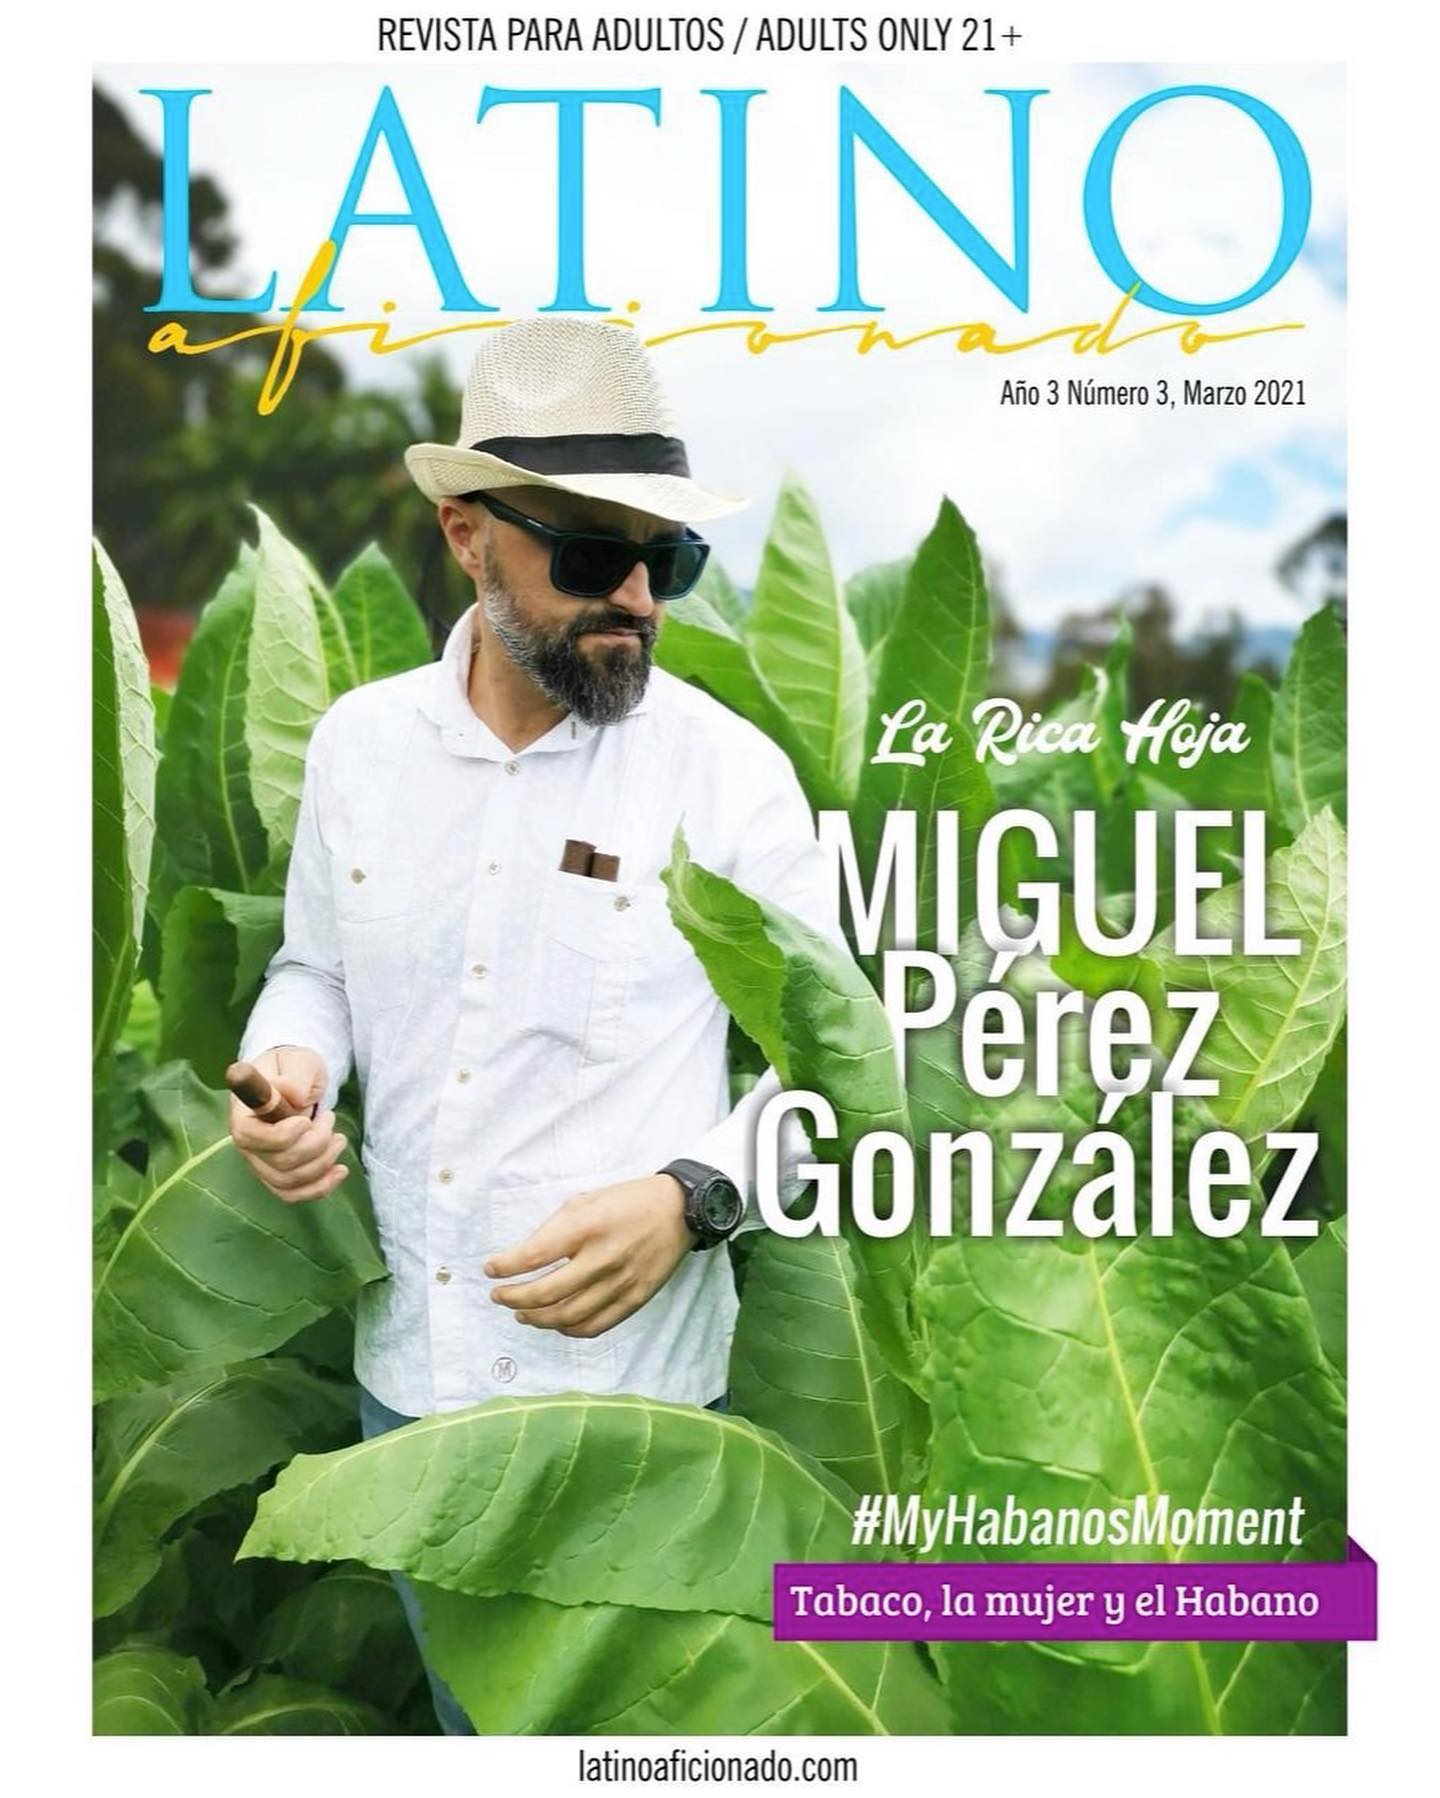 Acabou de sair a nova edição da revista “Latino Aficionado”, e desta vez, escrevi uma matéria/entrevista especial com Miguel Macías, o diretor da maior associação de ensino sobre tabaco no mundo, a IACS